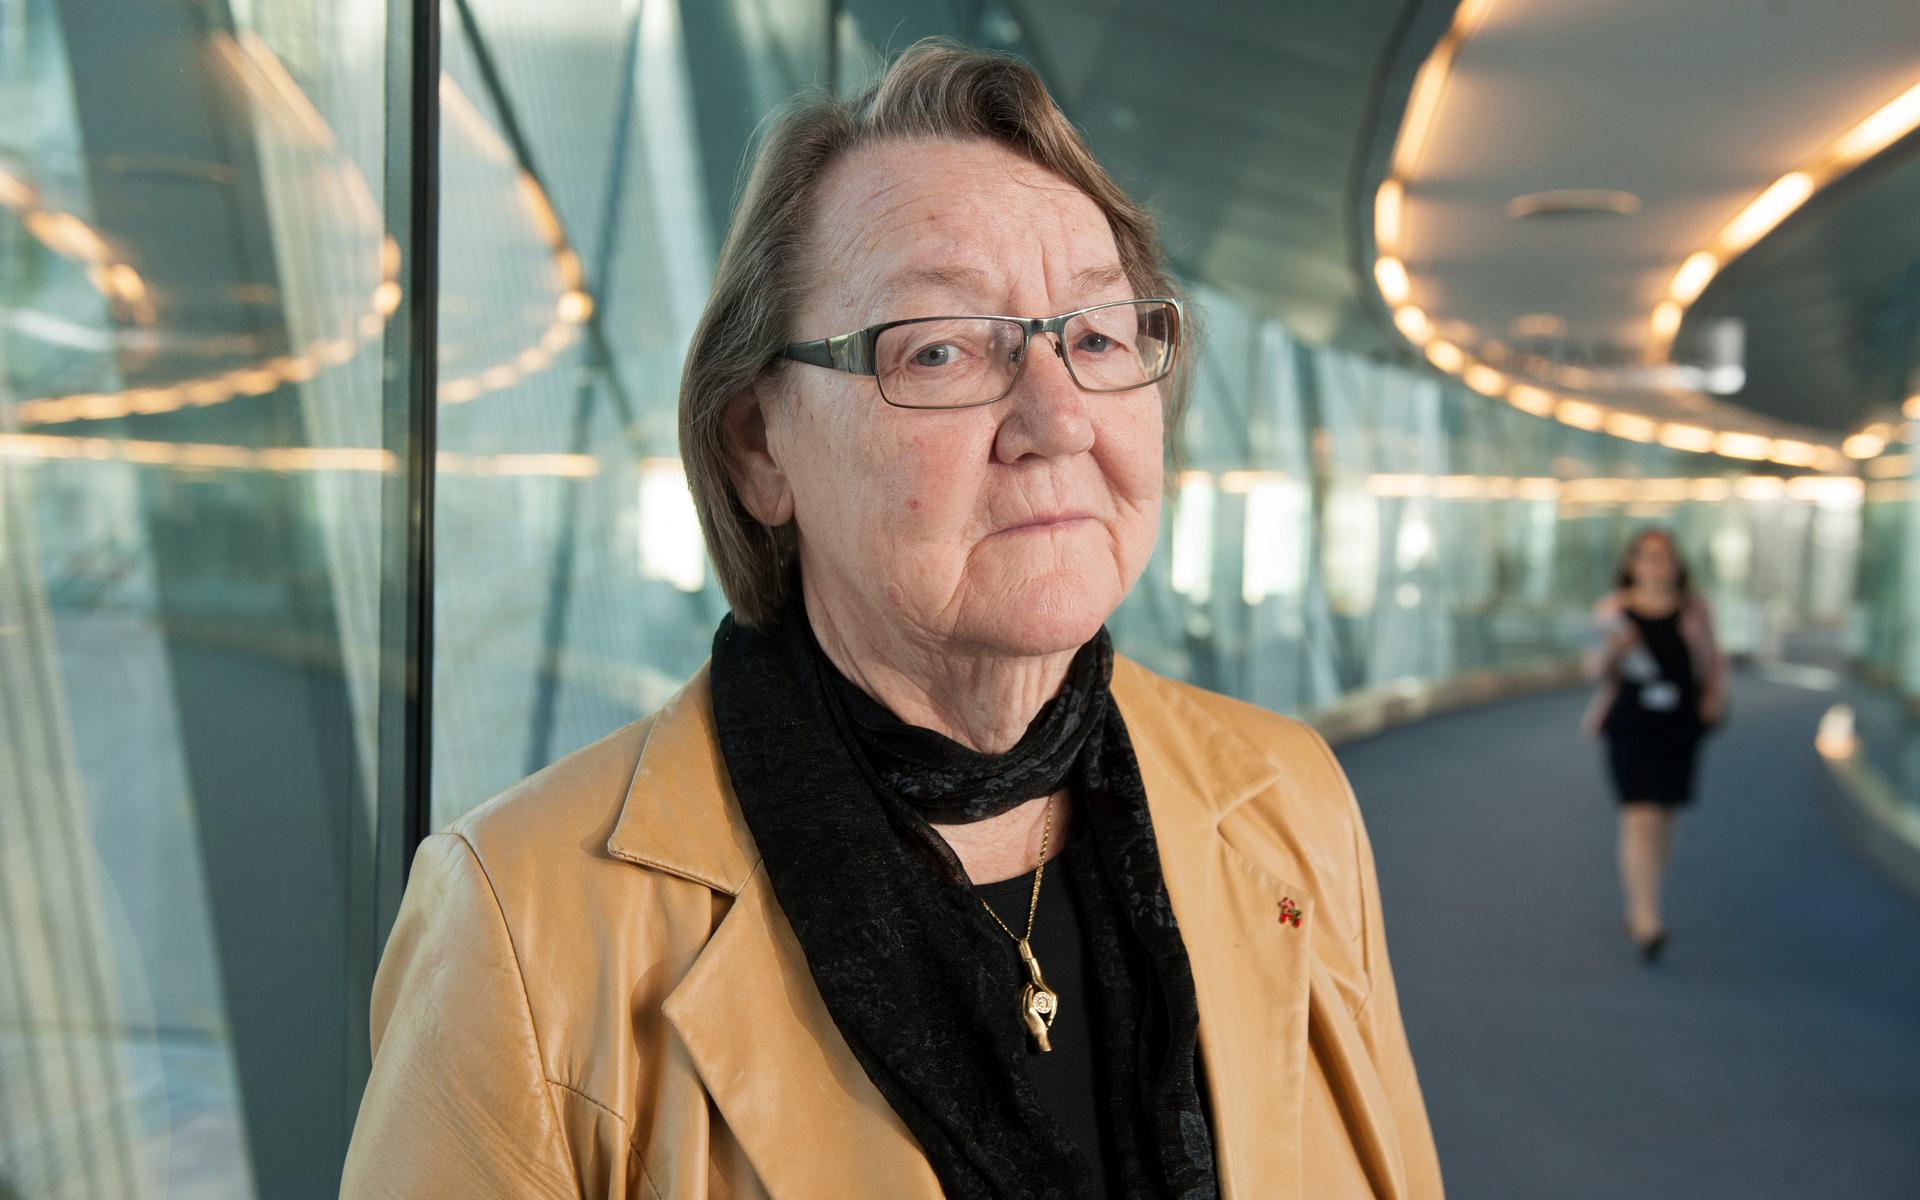 Den tidigare liberala politikern Marit Paulsen är död, skriver Expressen.